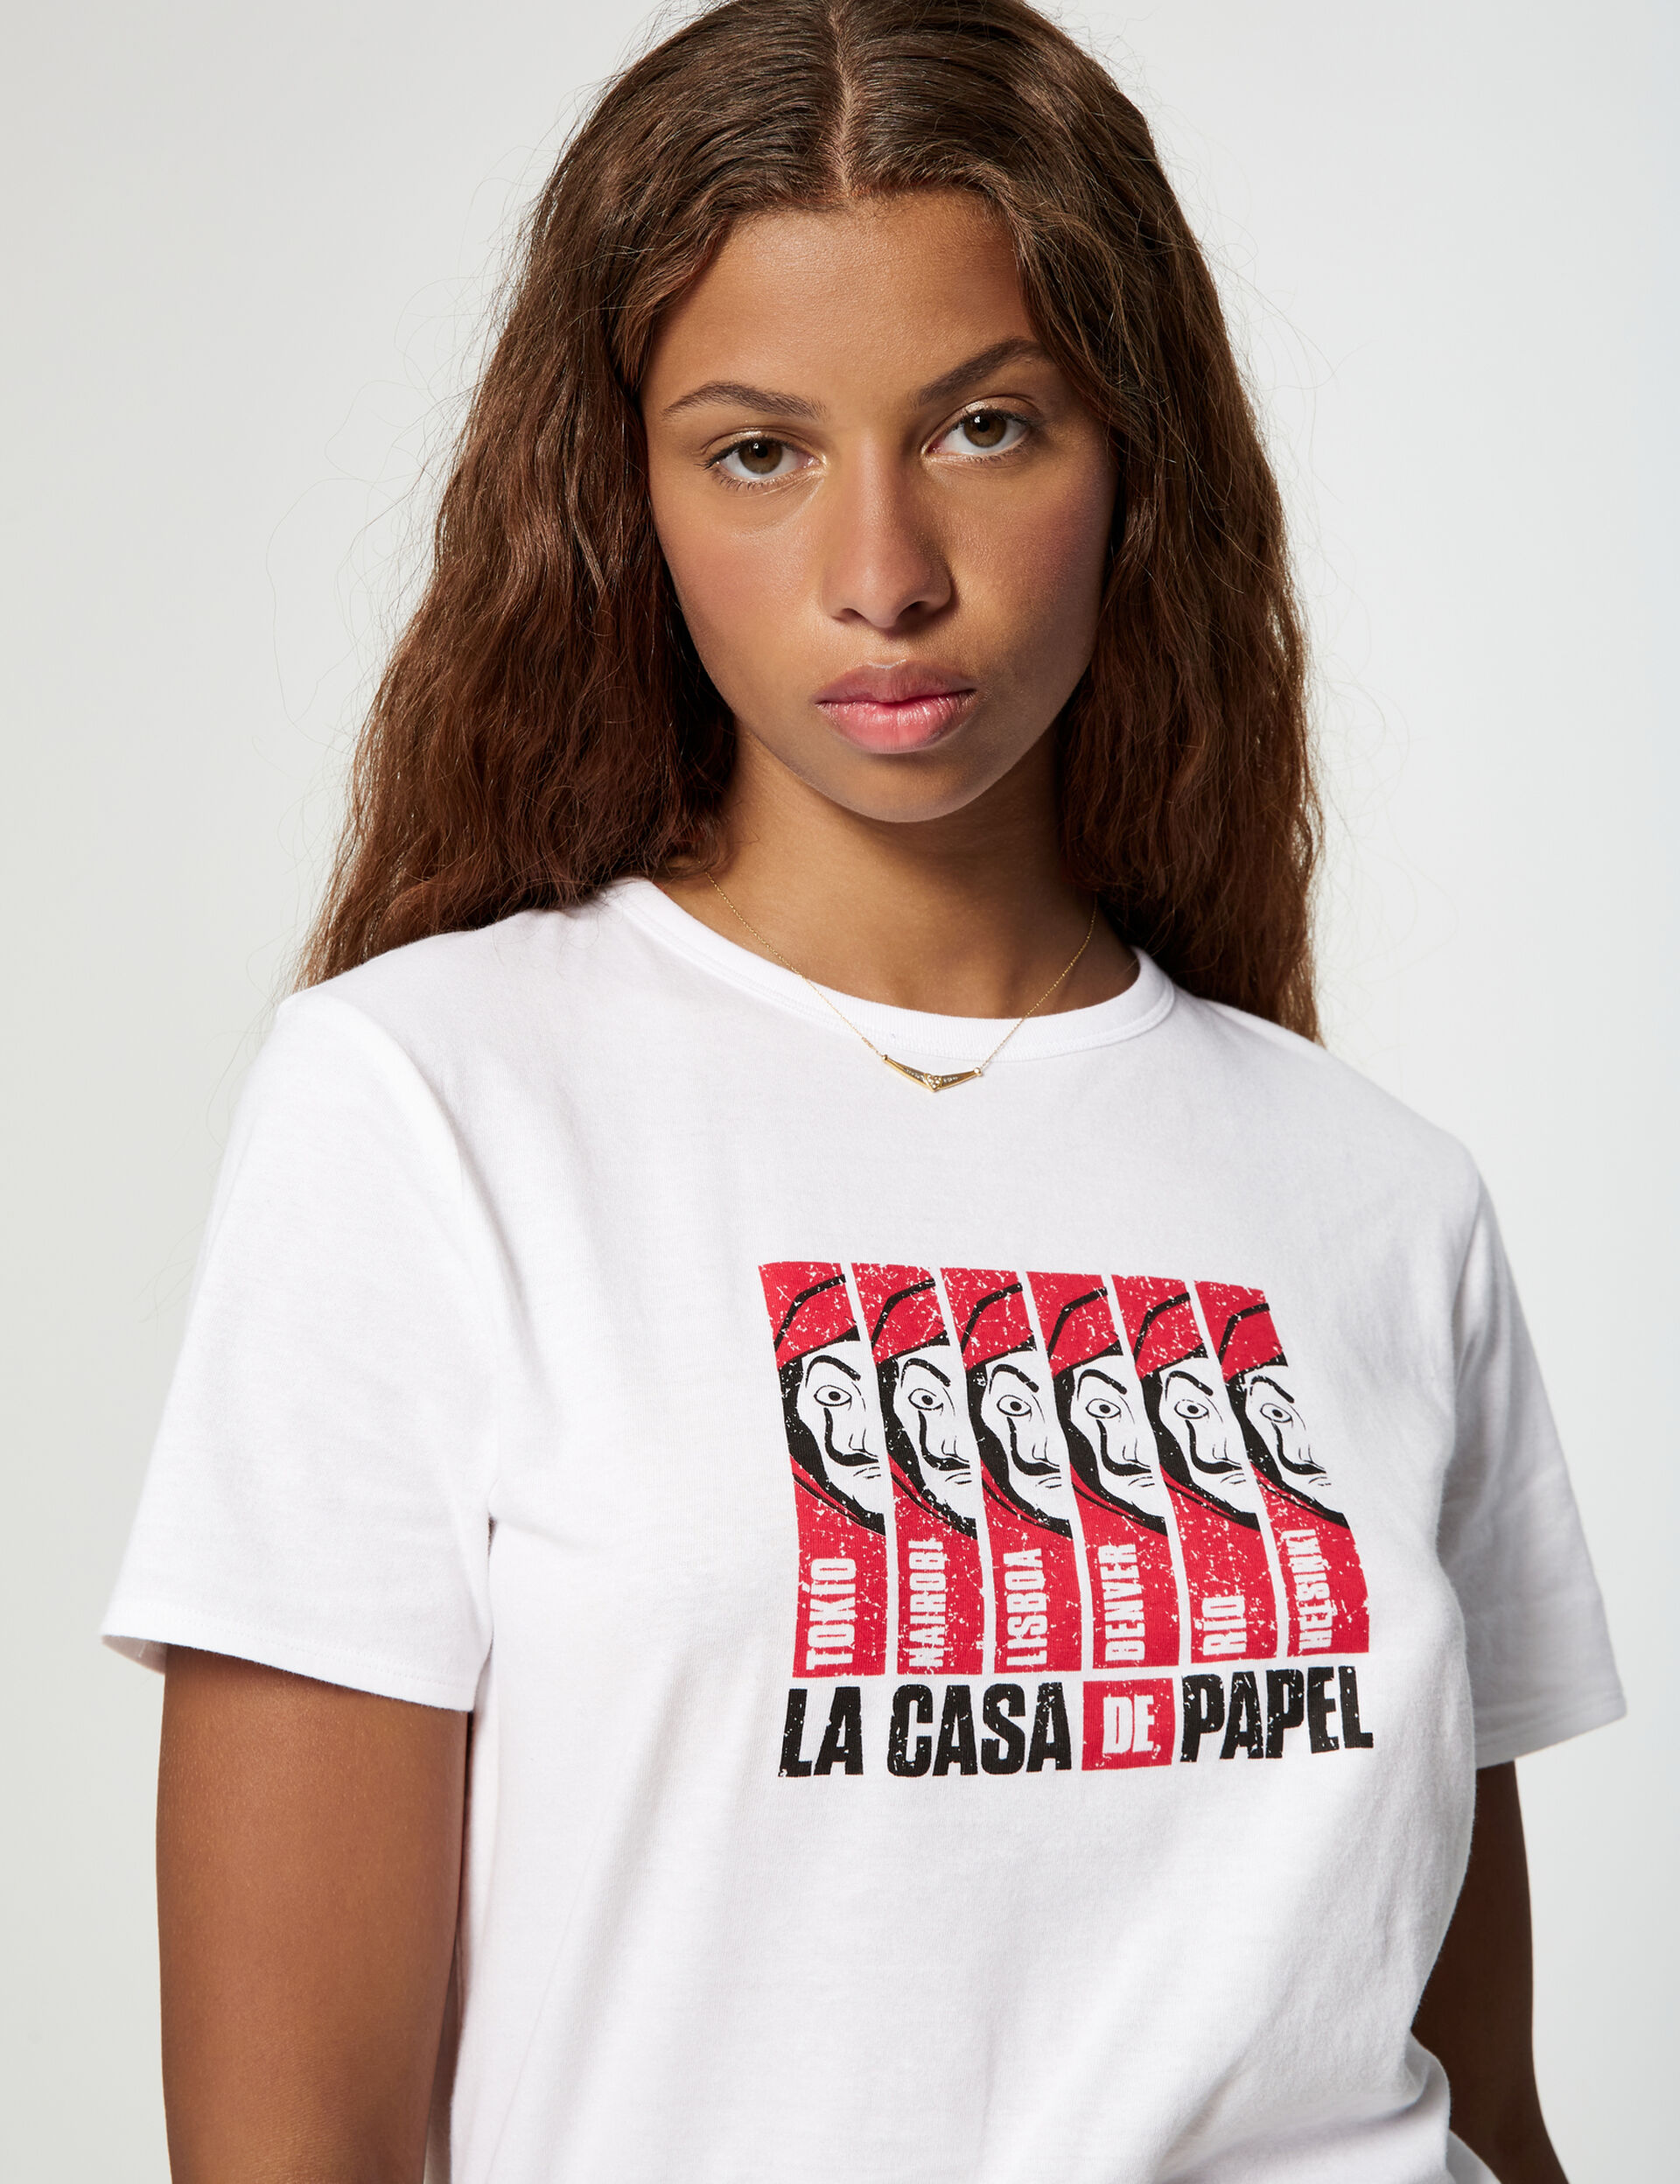 La Casa de Papel (Money Heist) T-shirt